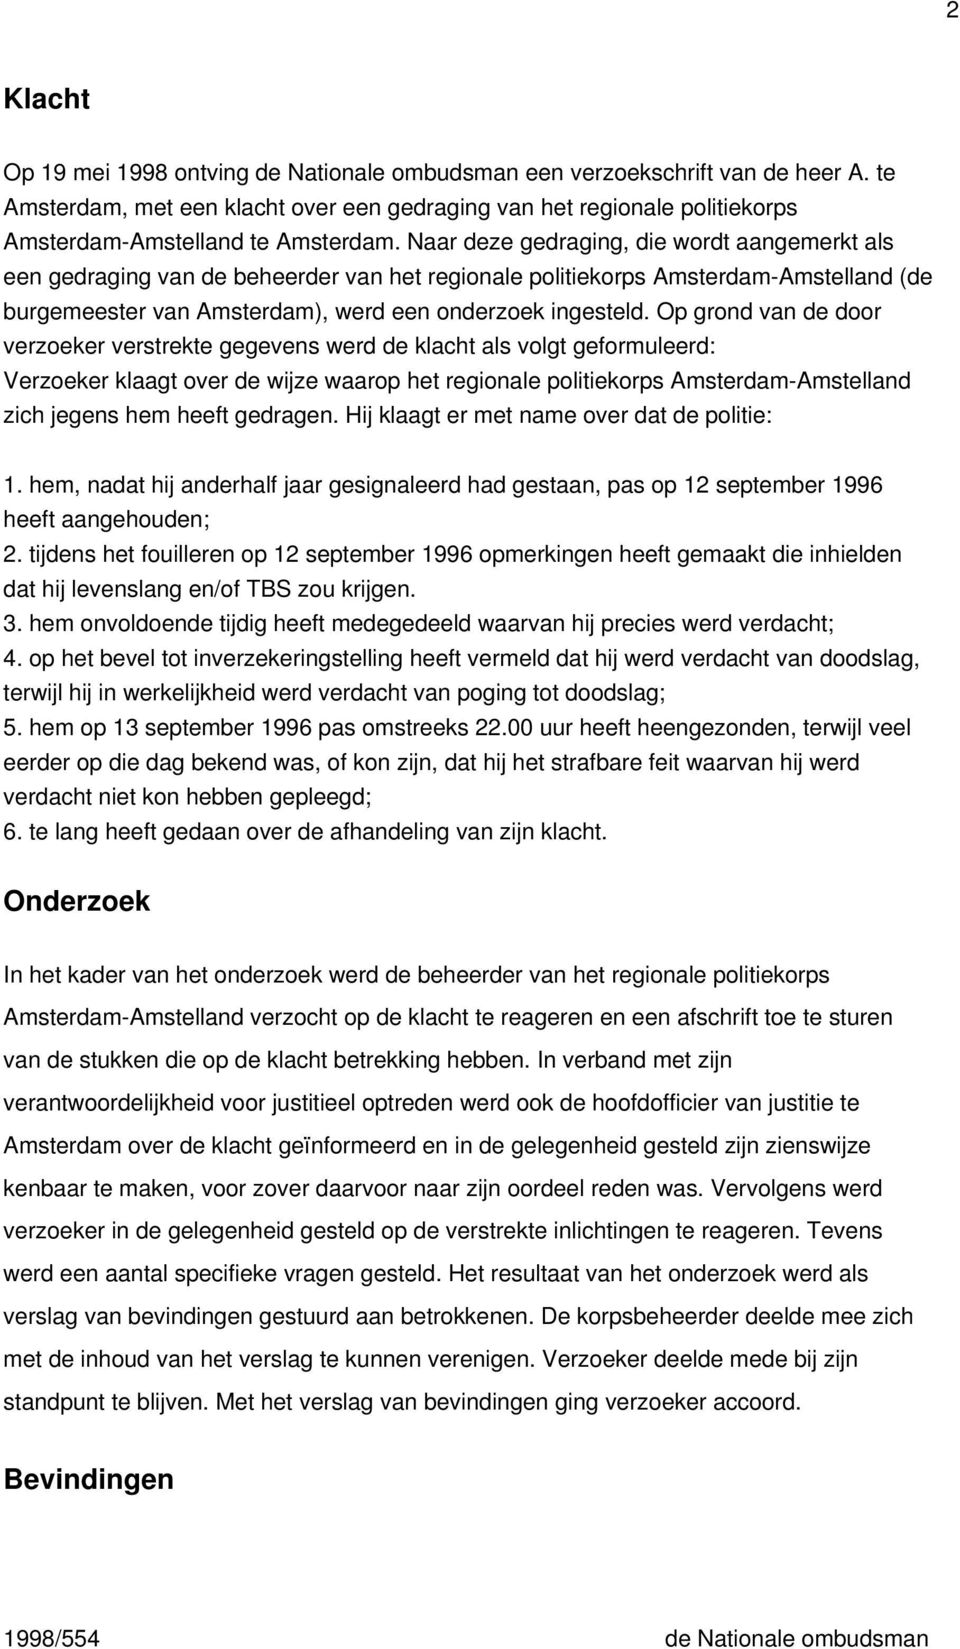 Naar deze gedraging, die wordt aangemerkt als een gedraging van de beheerder van het regionale politiekorps Amsterdam-Amstelland (de burgemeester van Amsterdam), werd een onderzoek ingesteld.